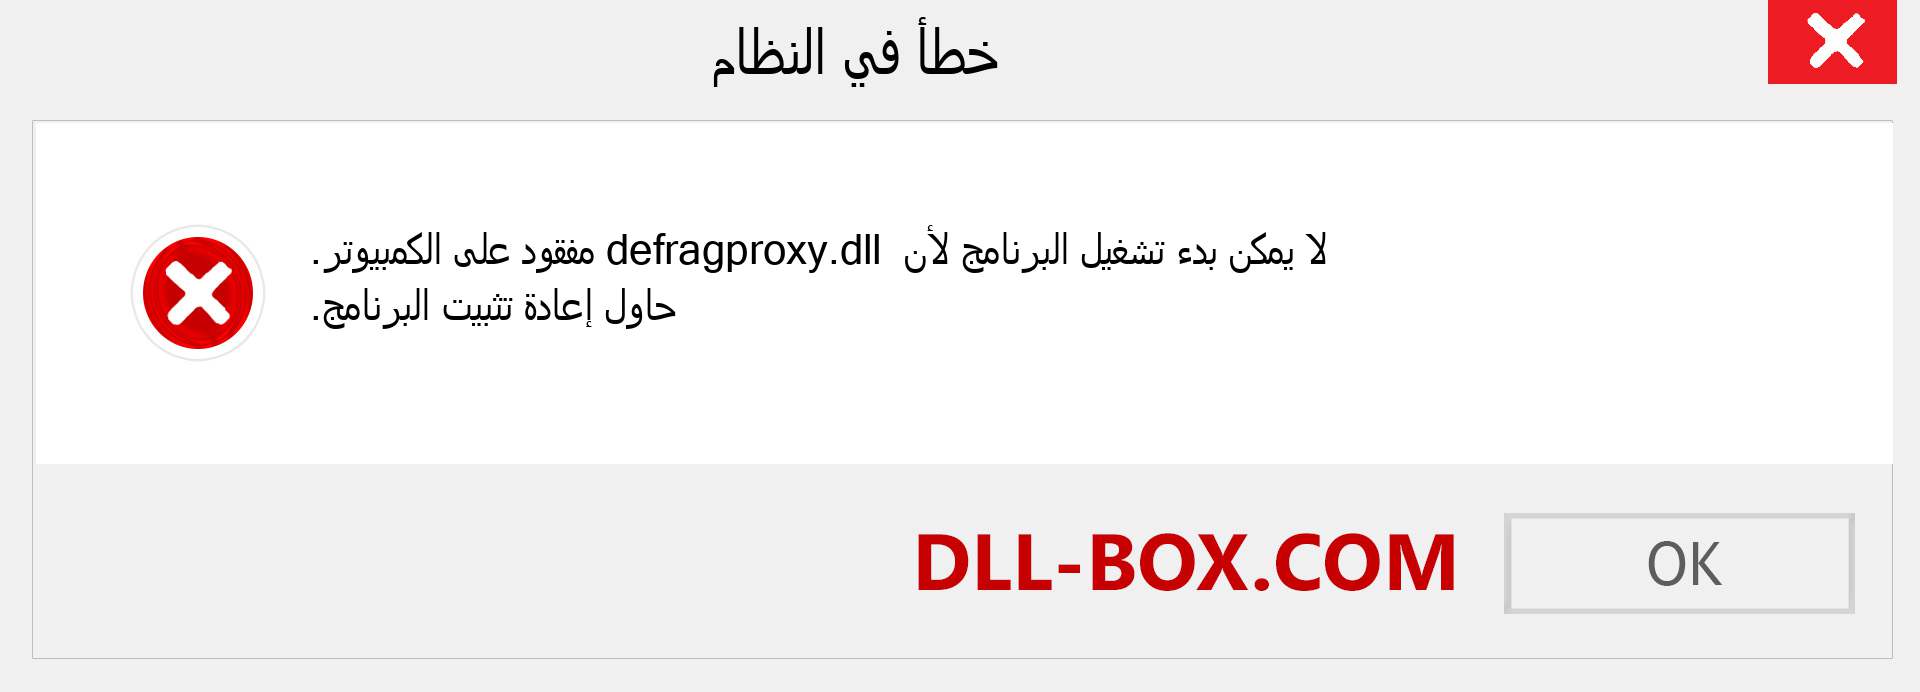 ملف defragproxy.dll مفقود ؟. التنزيل لنظام التشغيل Windows 7 و 8 و 10 - إصلاح خطأ defragproxy dll المفقود على Windows والصور والصور